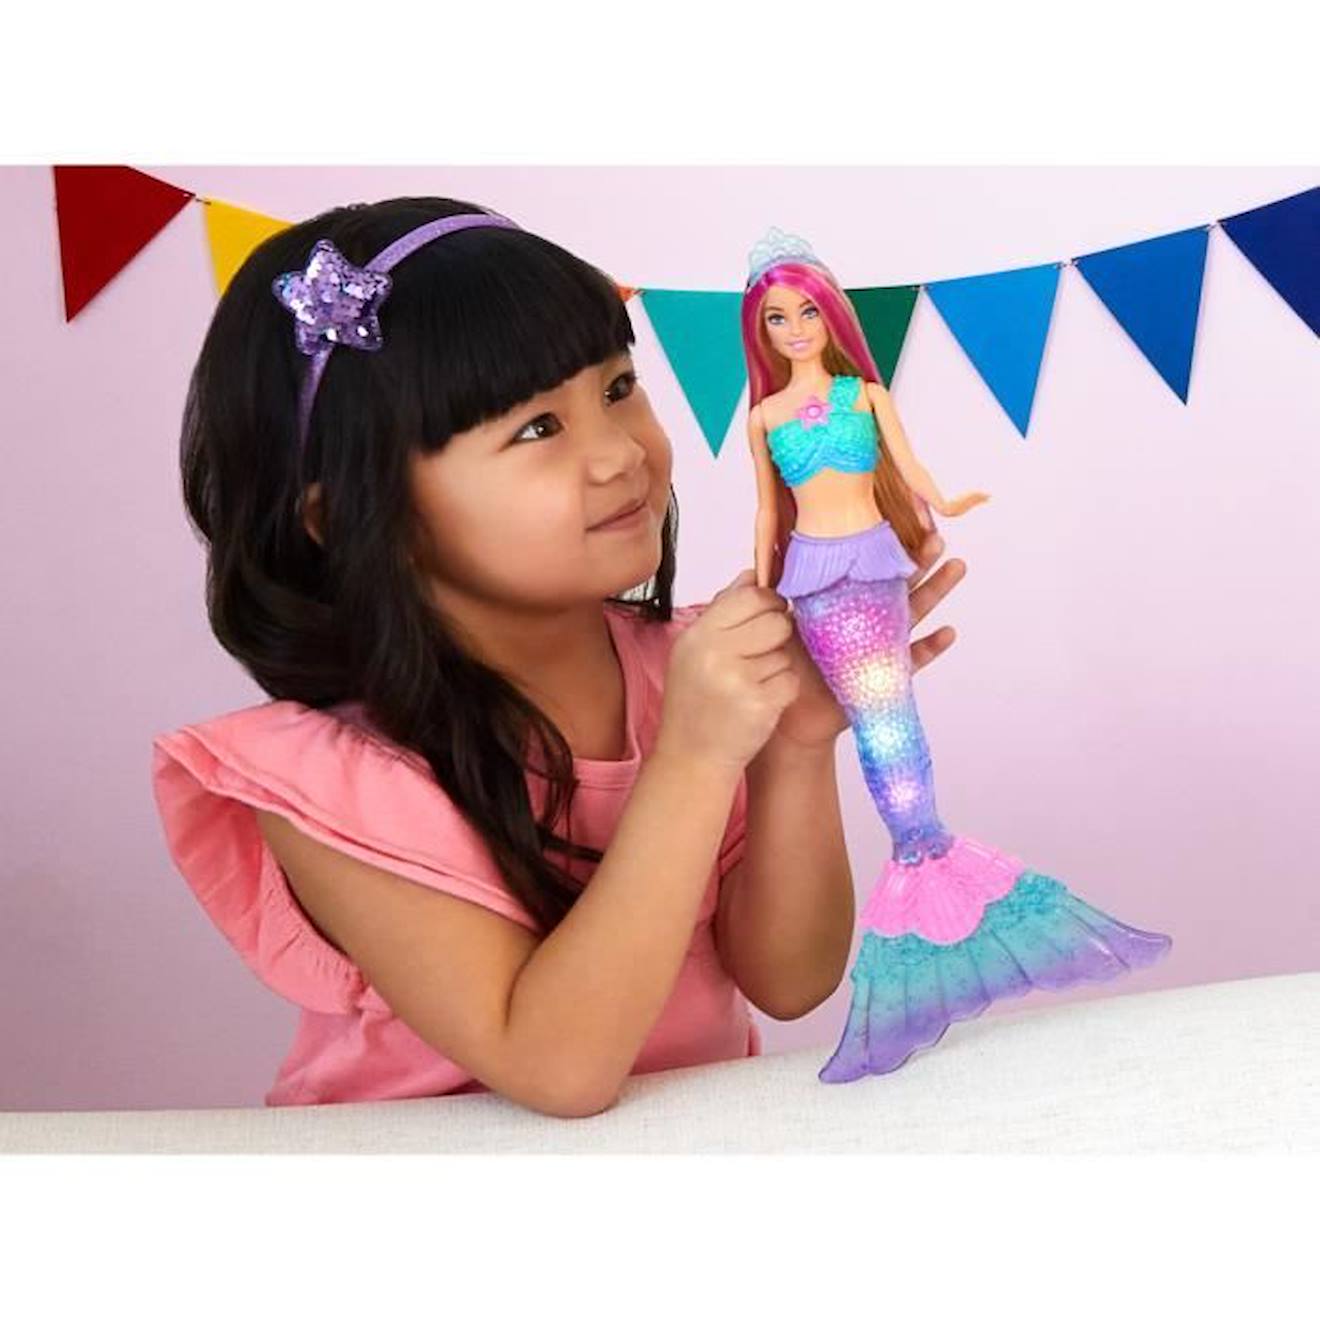 Poupées Barbie Sirènes Brune et Rousse Mattel : King Jouet, Barbie